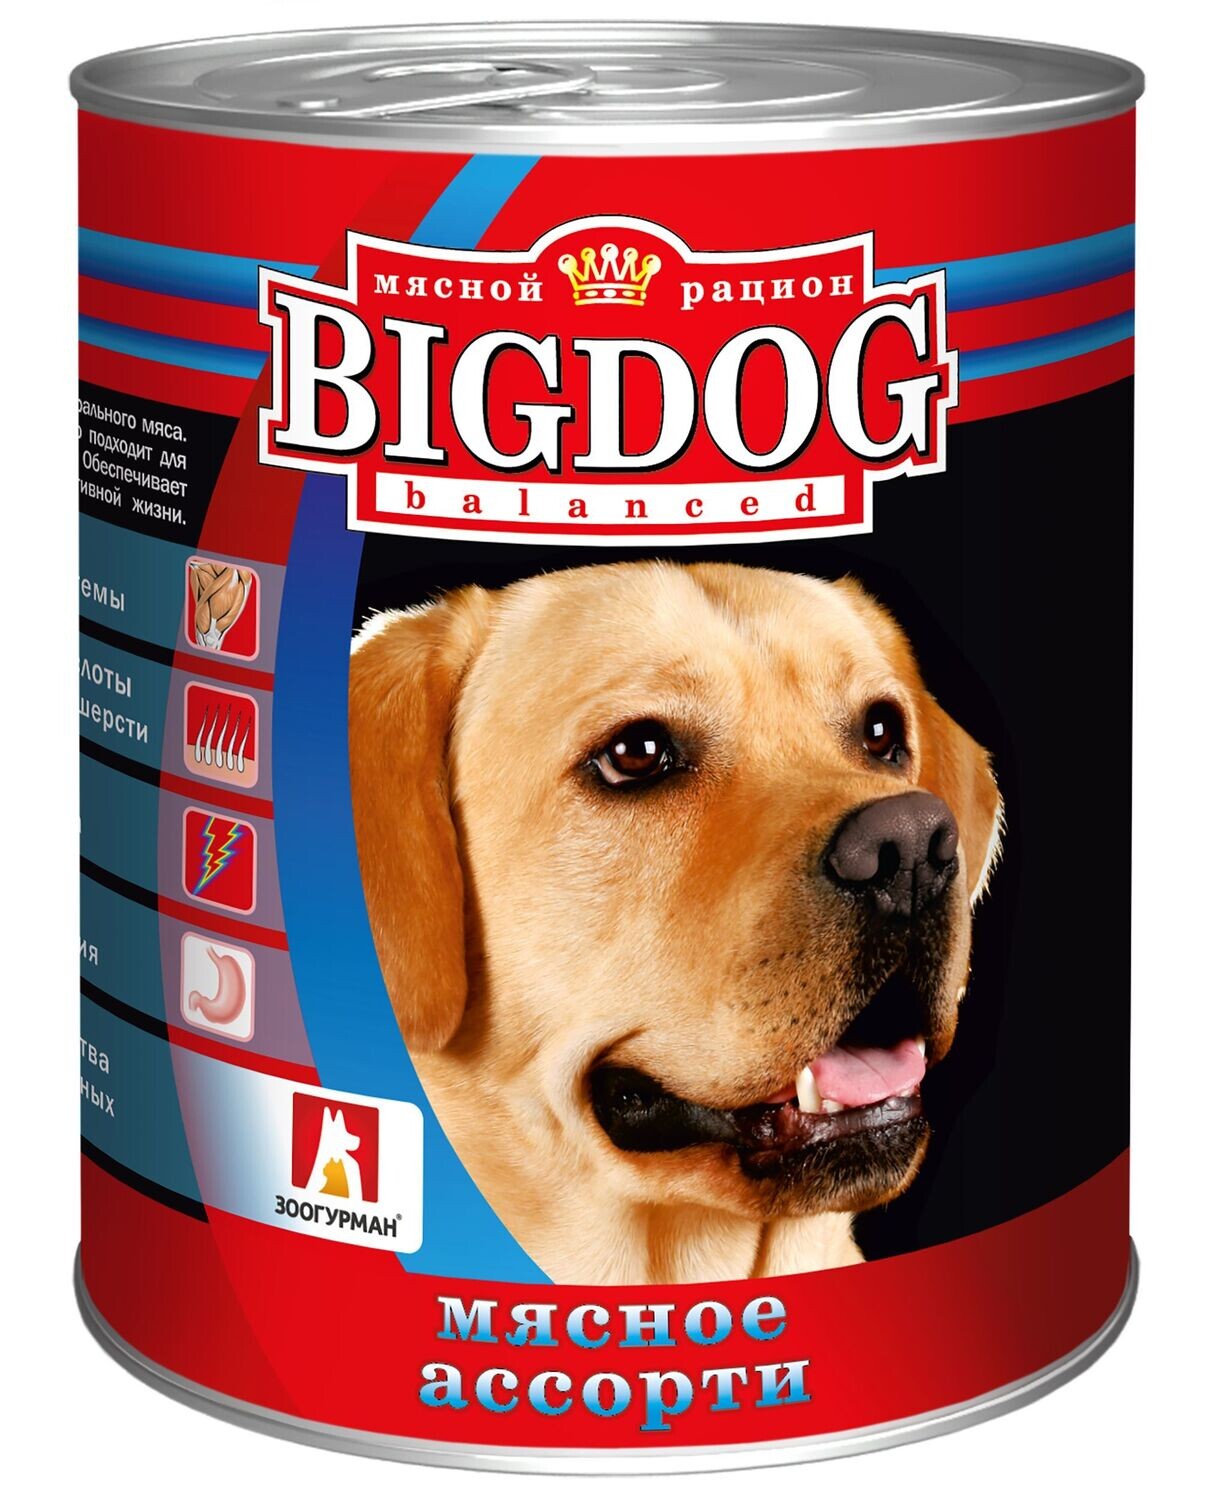 Зоогурман BIG DOG для собак Мясное ассорти 850гр